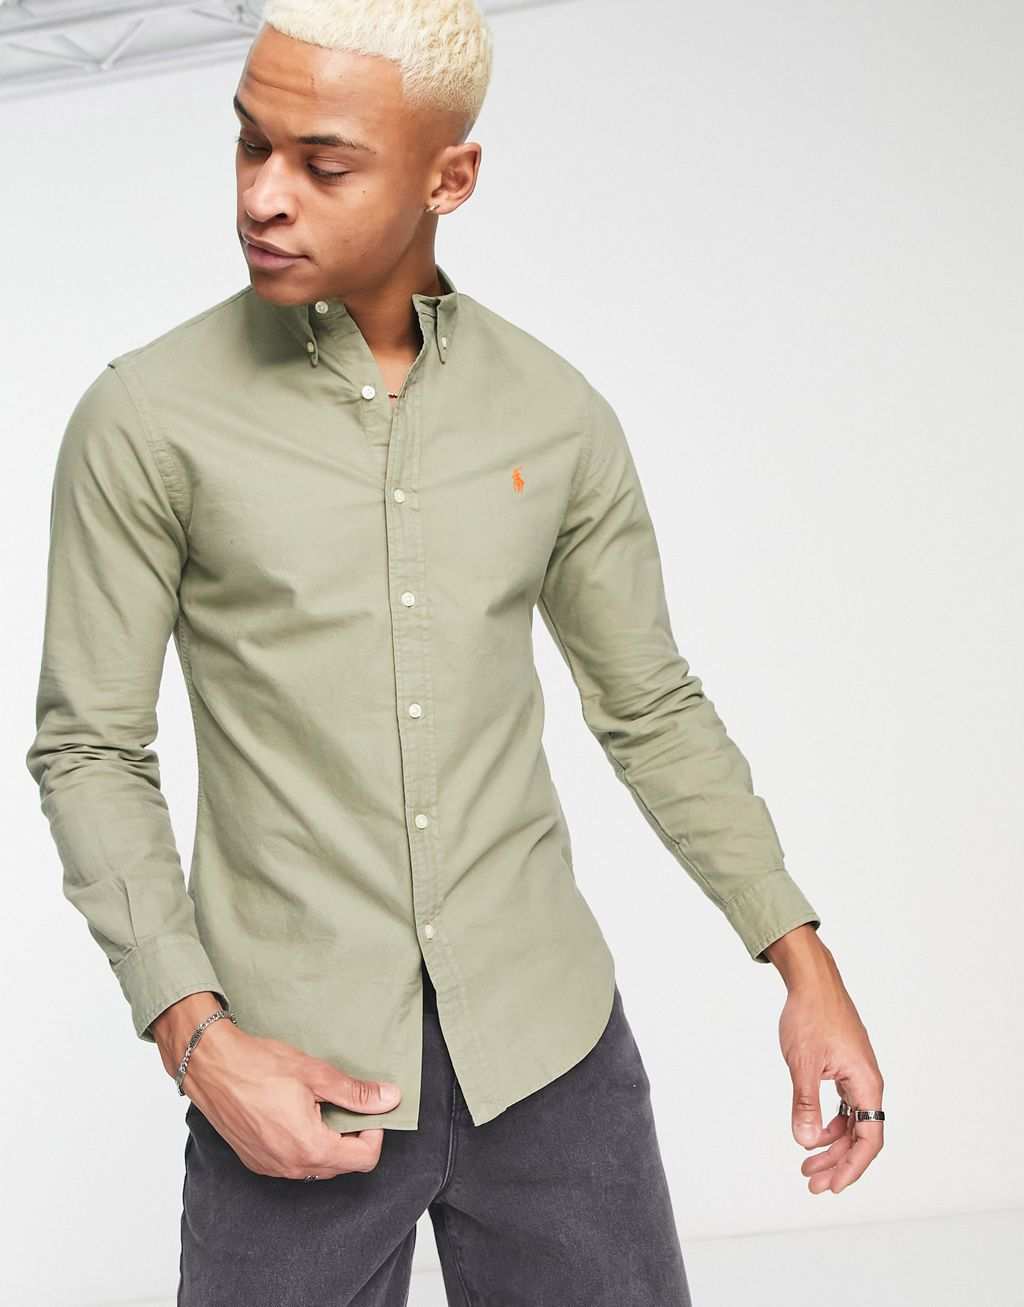 Темно-зеленая узкая оксфордская рубашка на пуговицах, окрашенная в одежду, с логотипом Polo Ralph Lauren